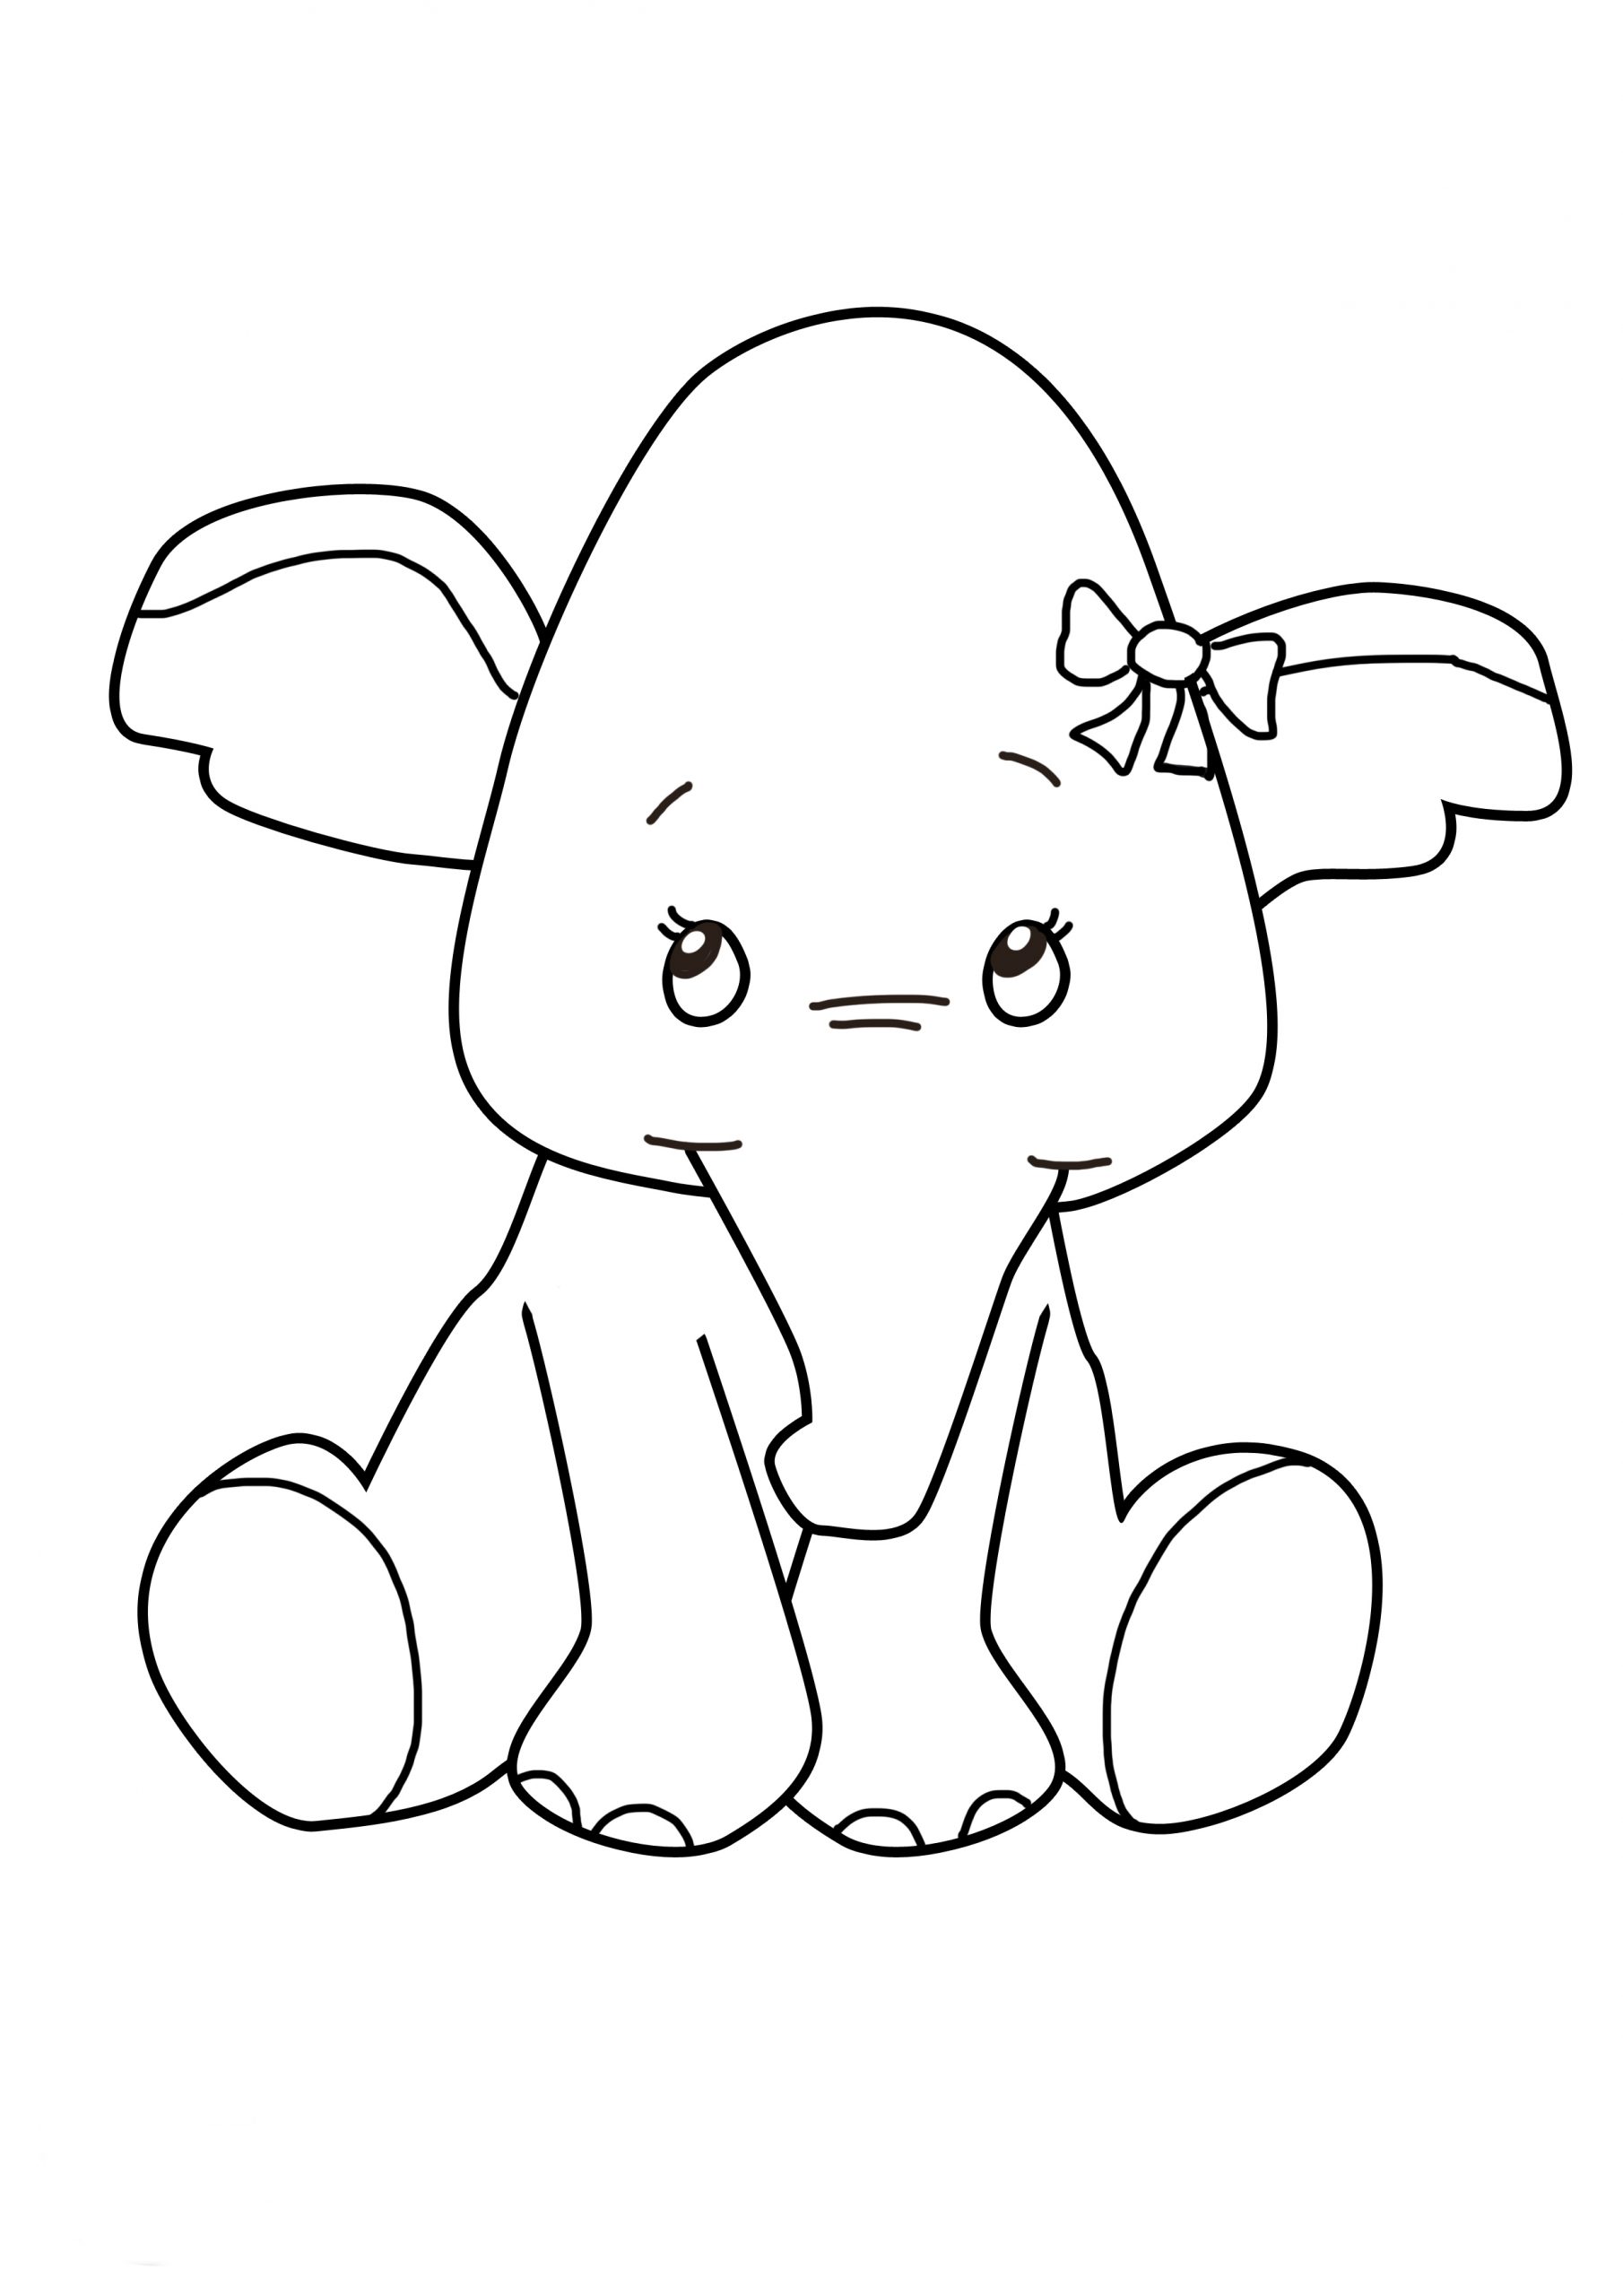 Coloriage Bébé Éléphant À Imprimer tout Éléphant Coloriage 